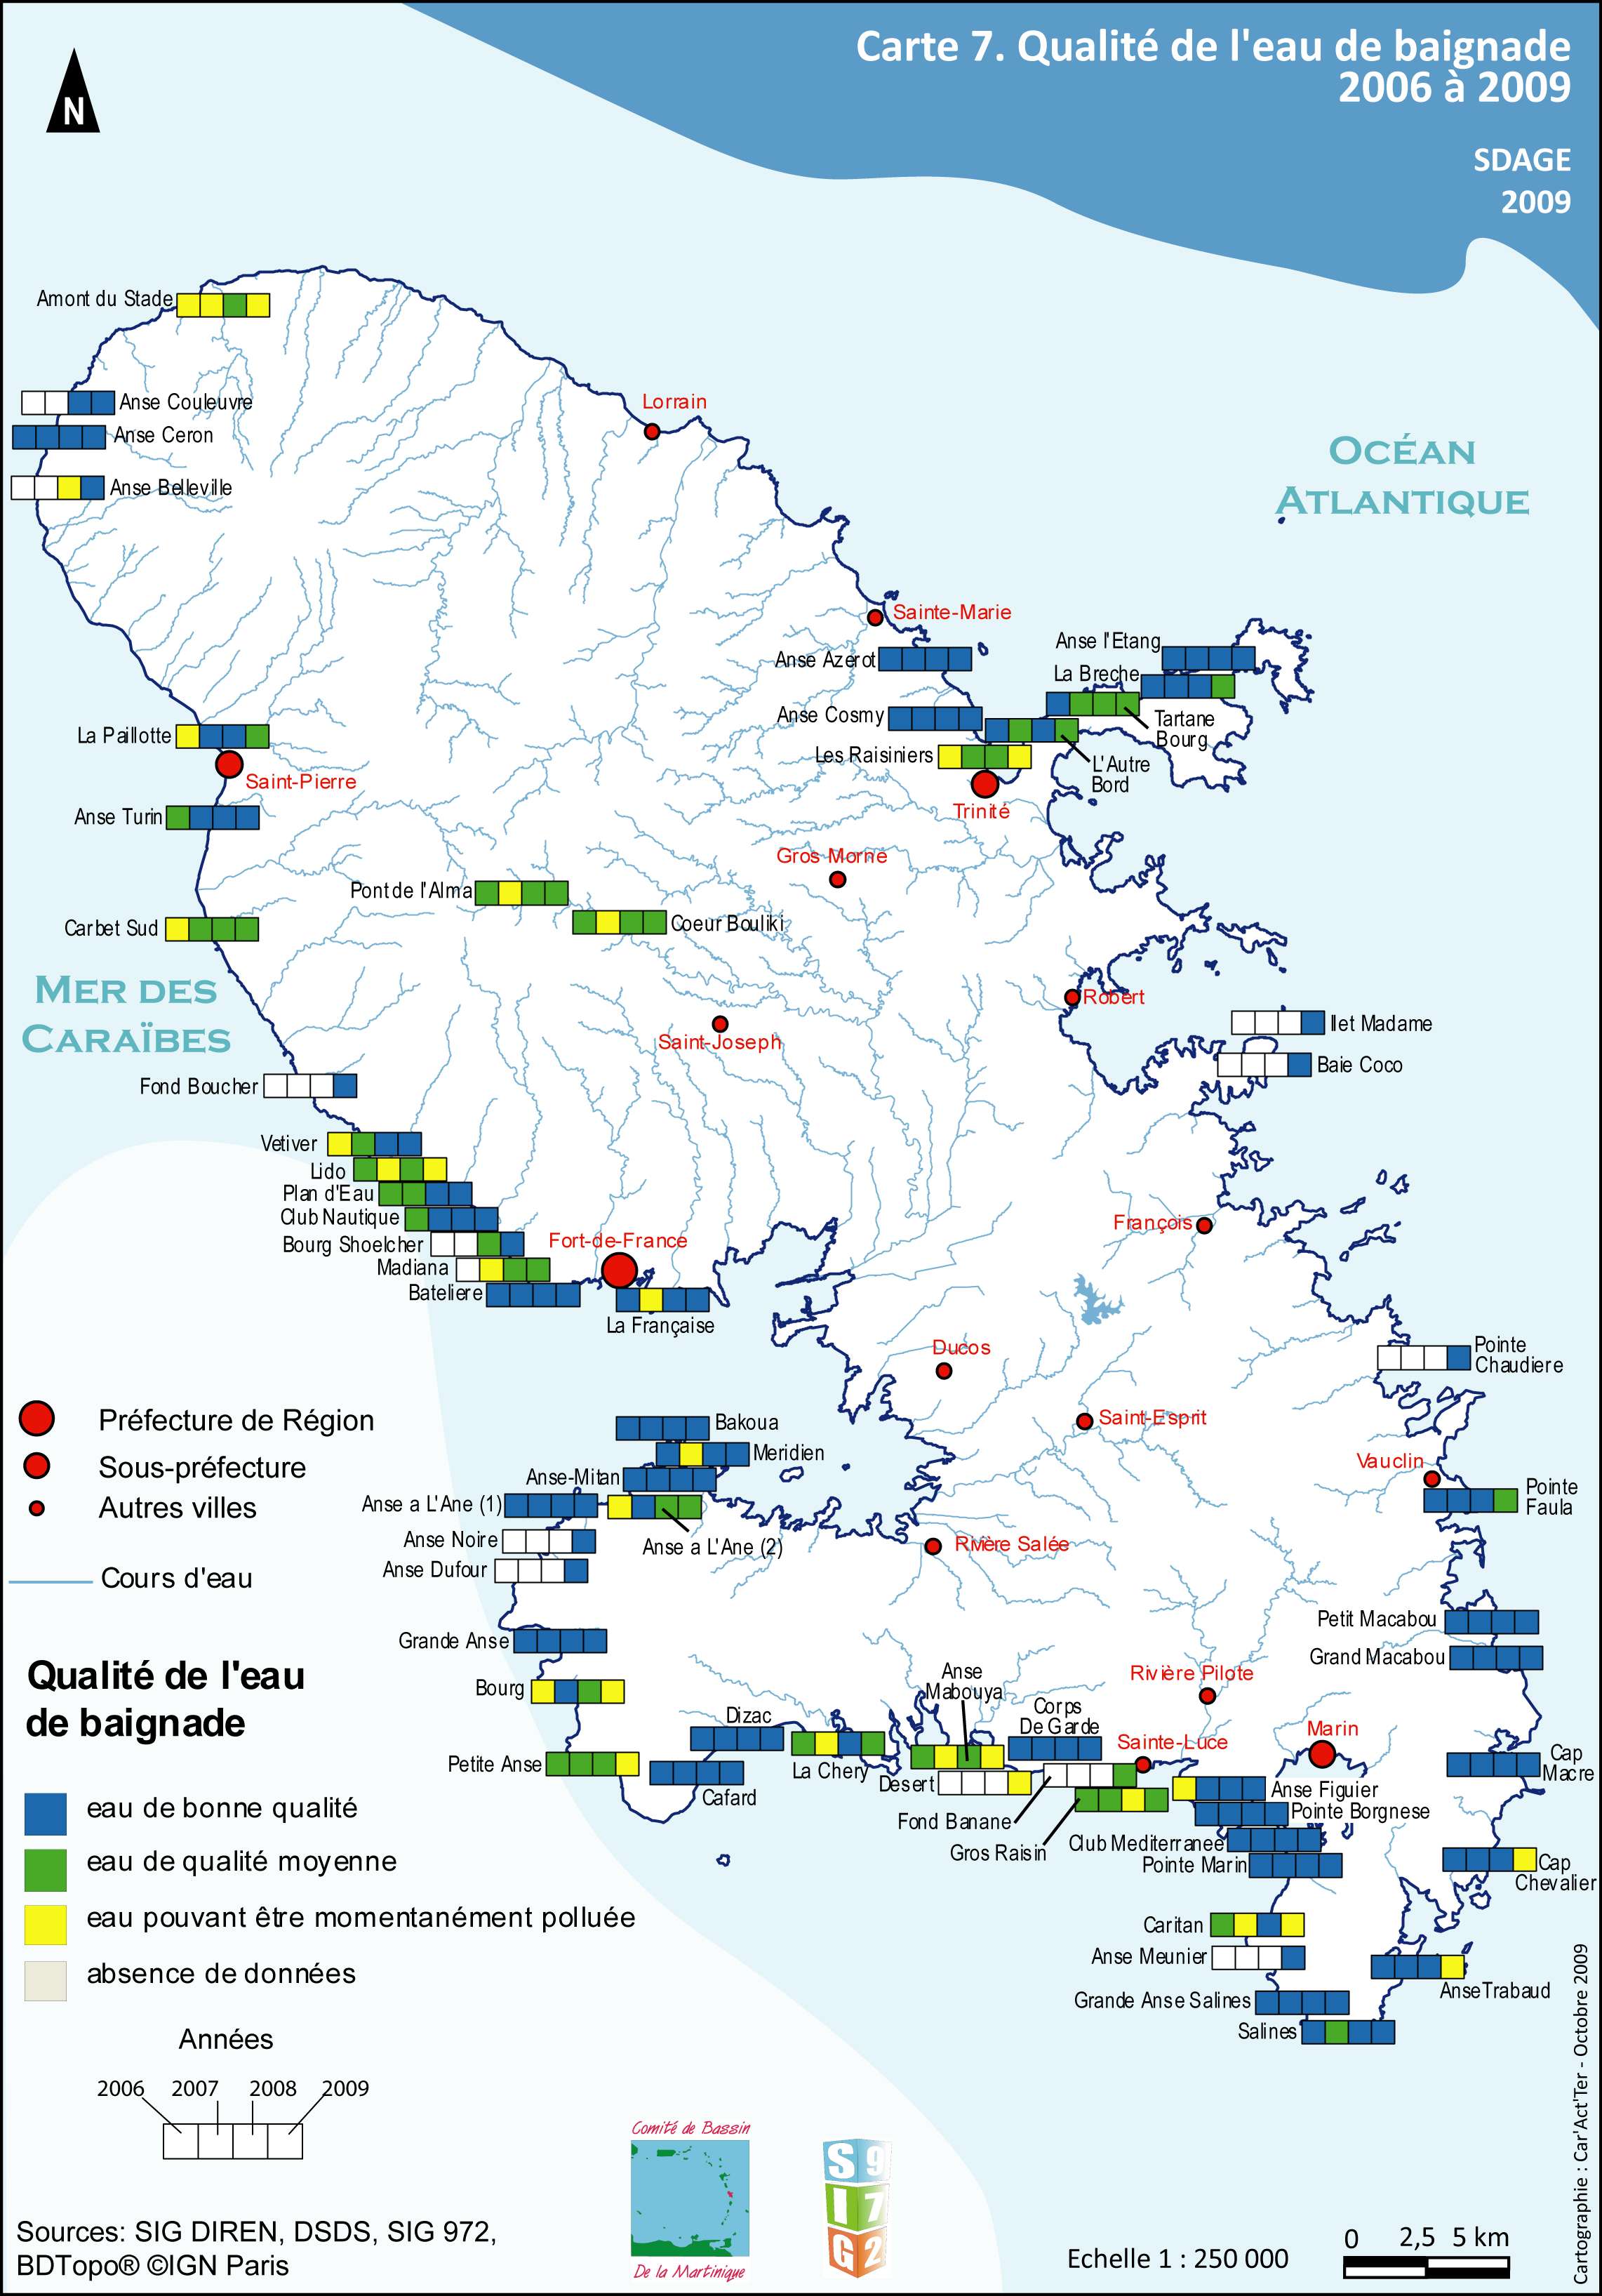 SDAGE 2010-2015 - Carte 07- Qualité des eaux de baignade de 2006 à 2009